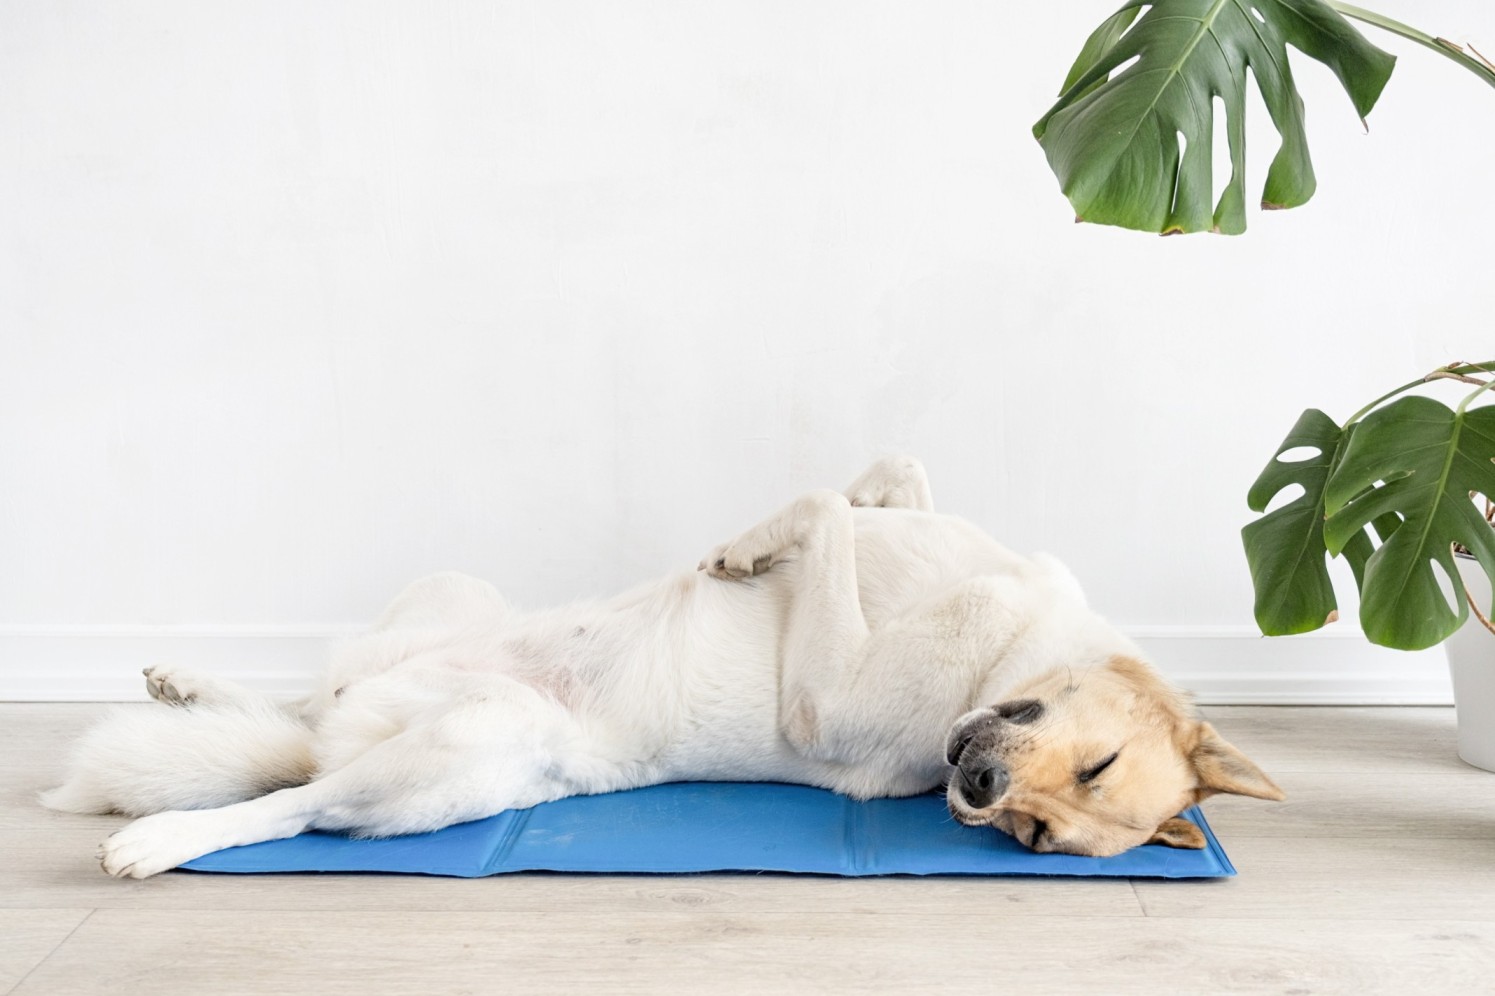 A dog sleeping on a blue mat indoors